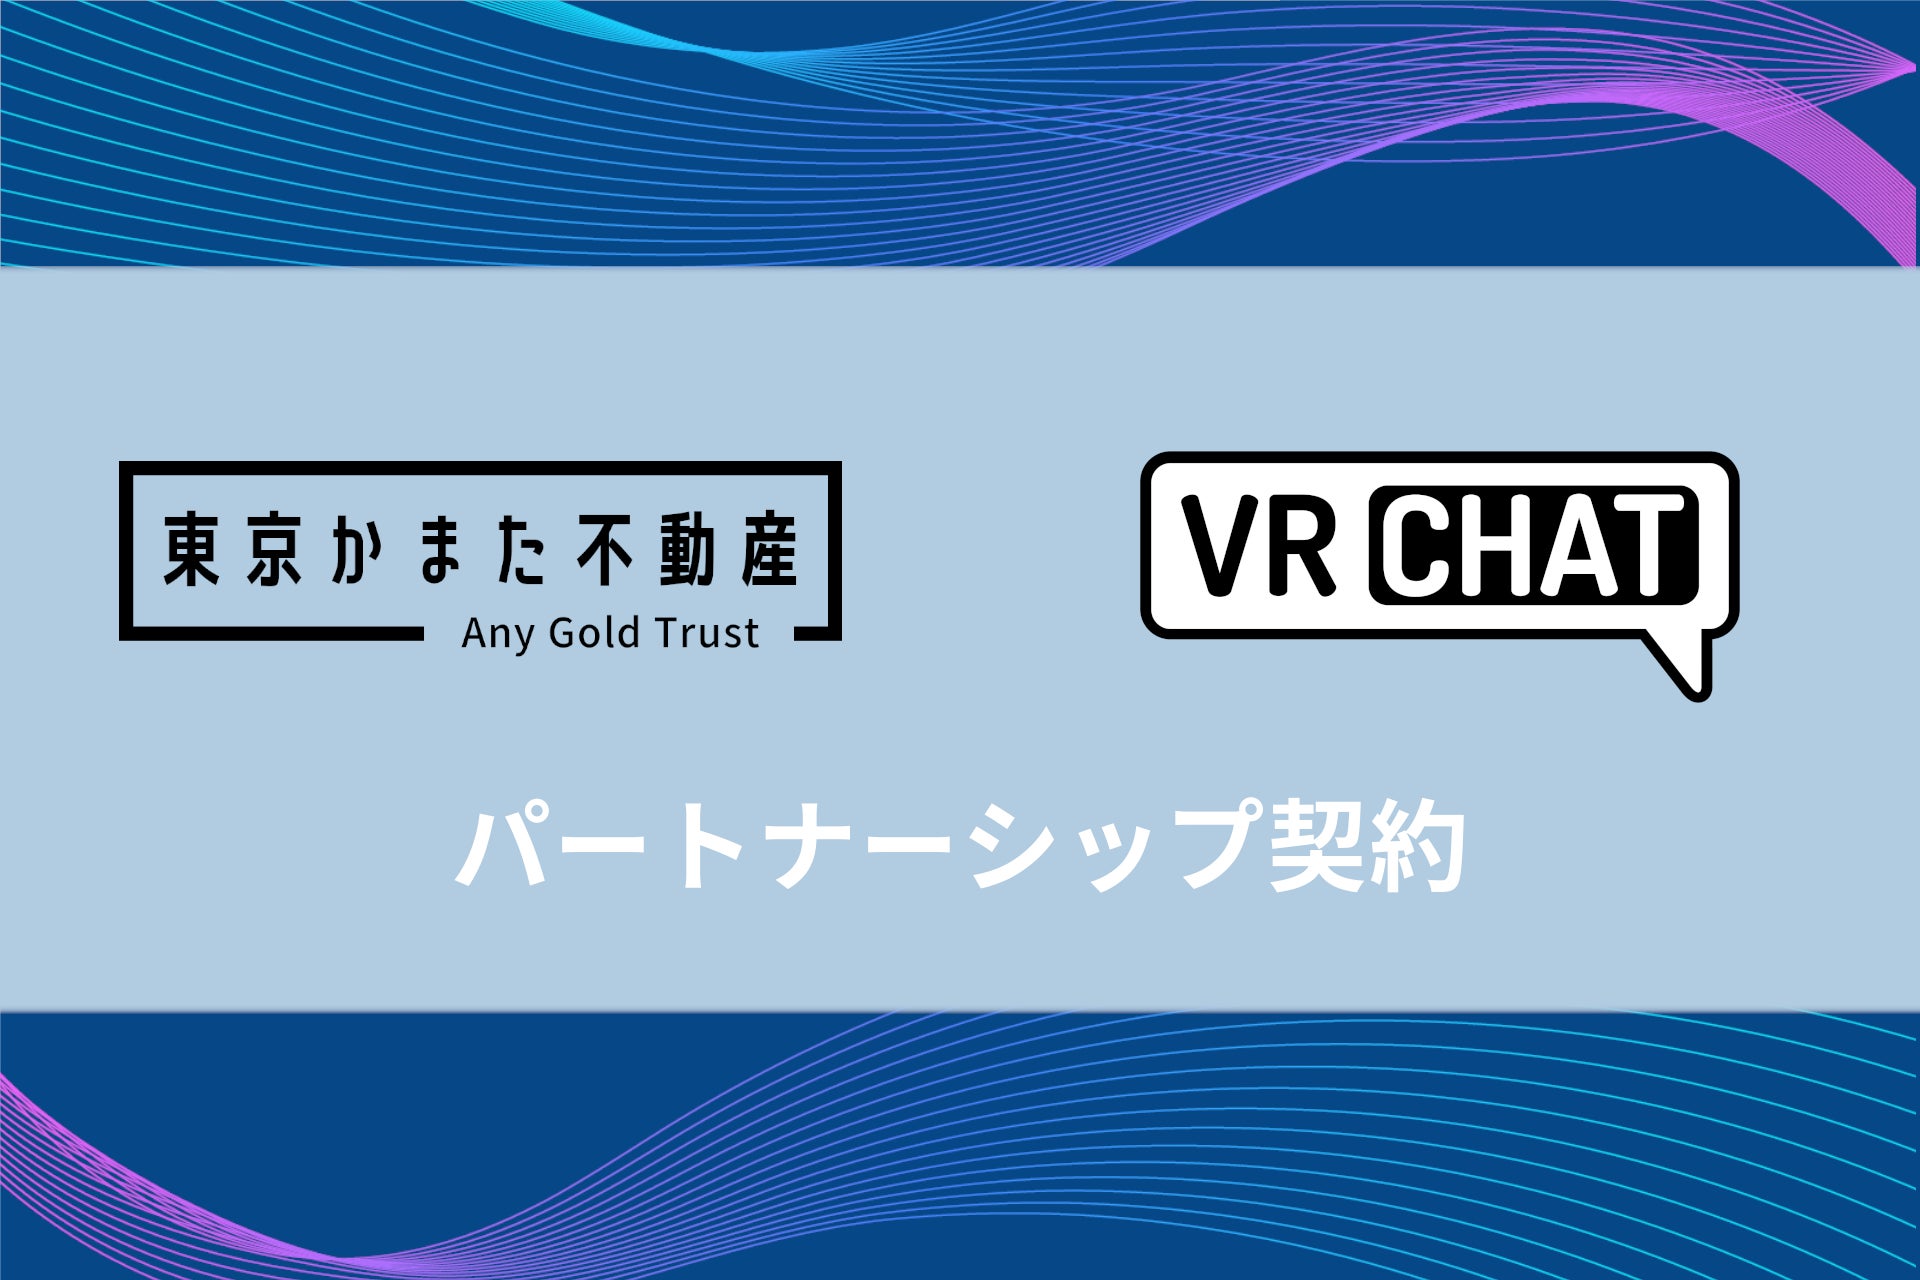 株式会社Any Gold Trust、米VRChat社とパートナーシップ契約を締結。首都圏にて不動産の賃貸仲介を提供する「東京かまた不動産」のVRChat支店など、VR事業に着手。のサブ画像1